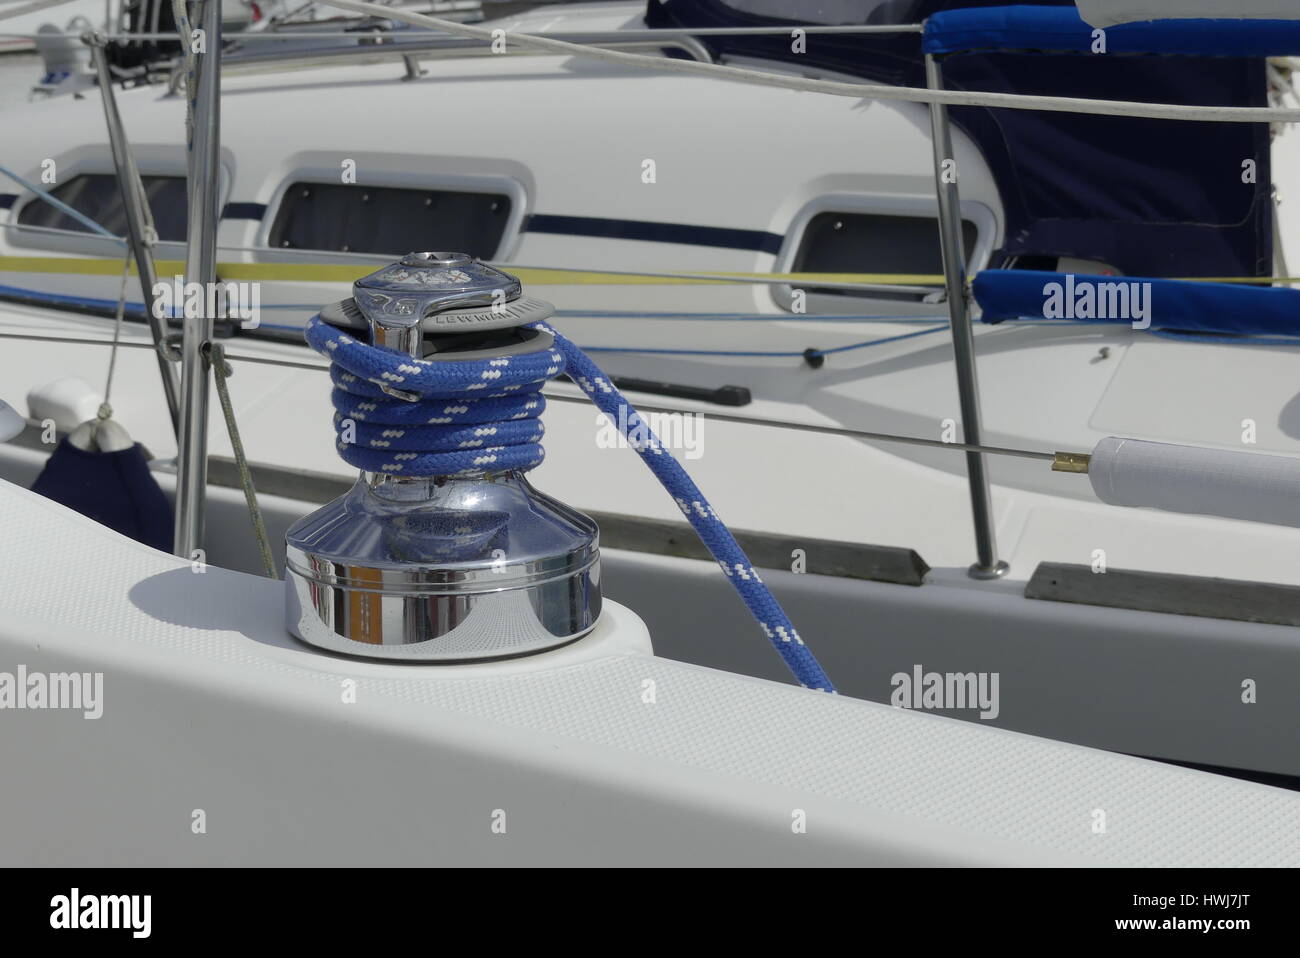 Détails de gênes bleu sur feuille treuil self-tailing sur bateau à voile racer, concept nautique Banque D'Images